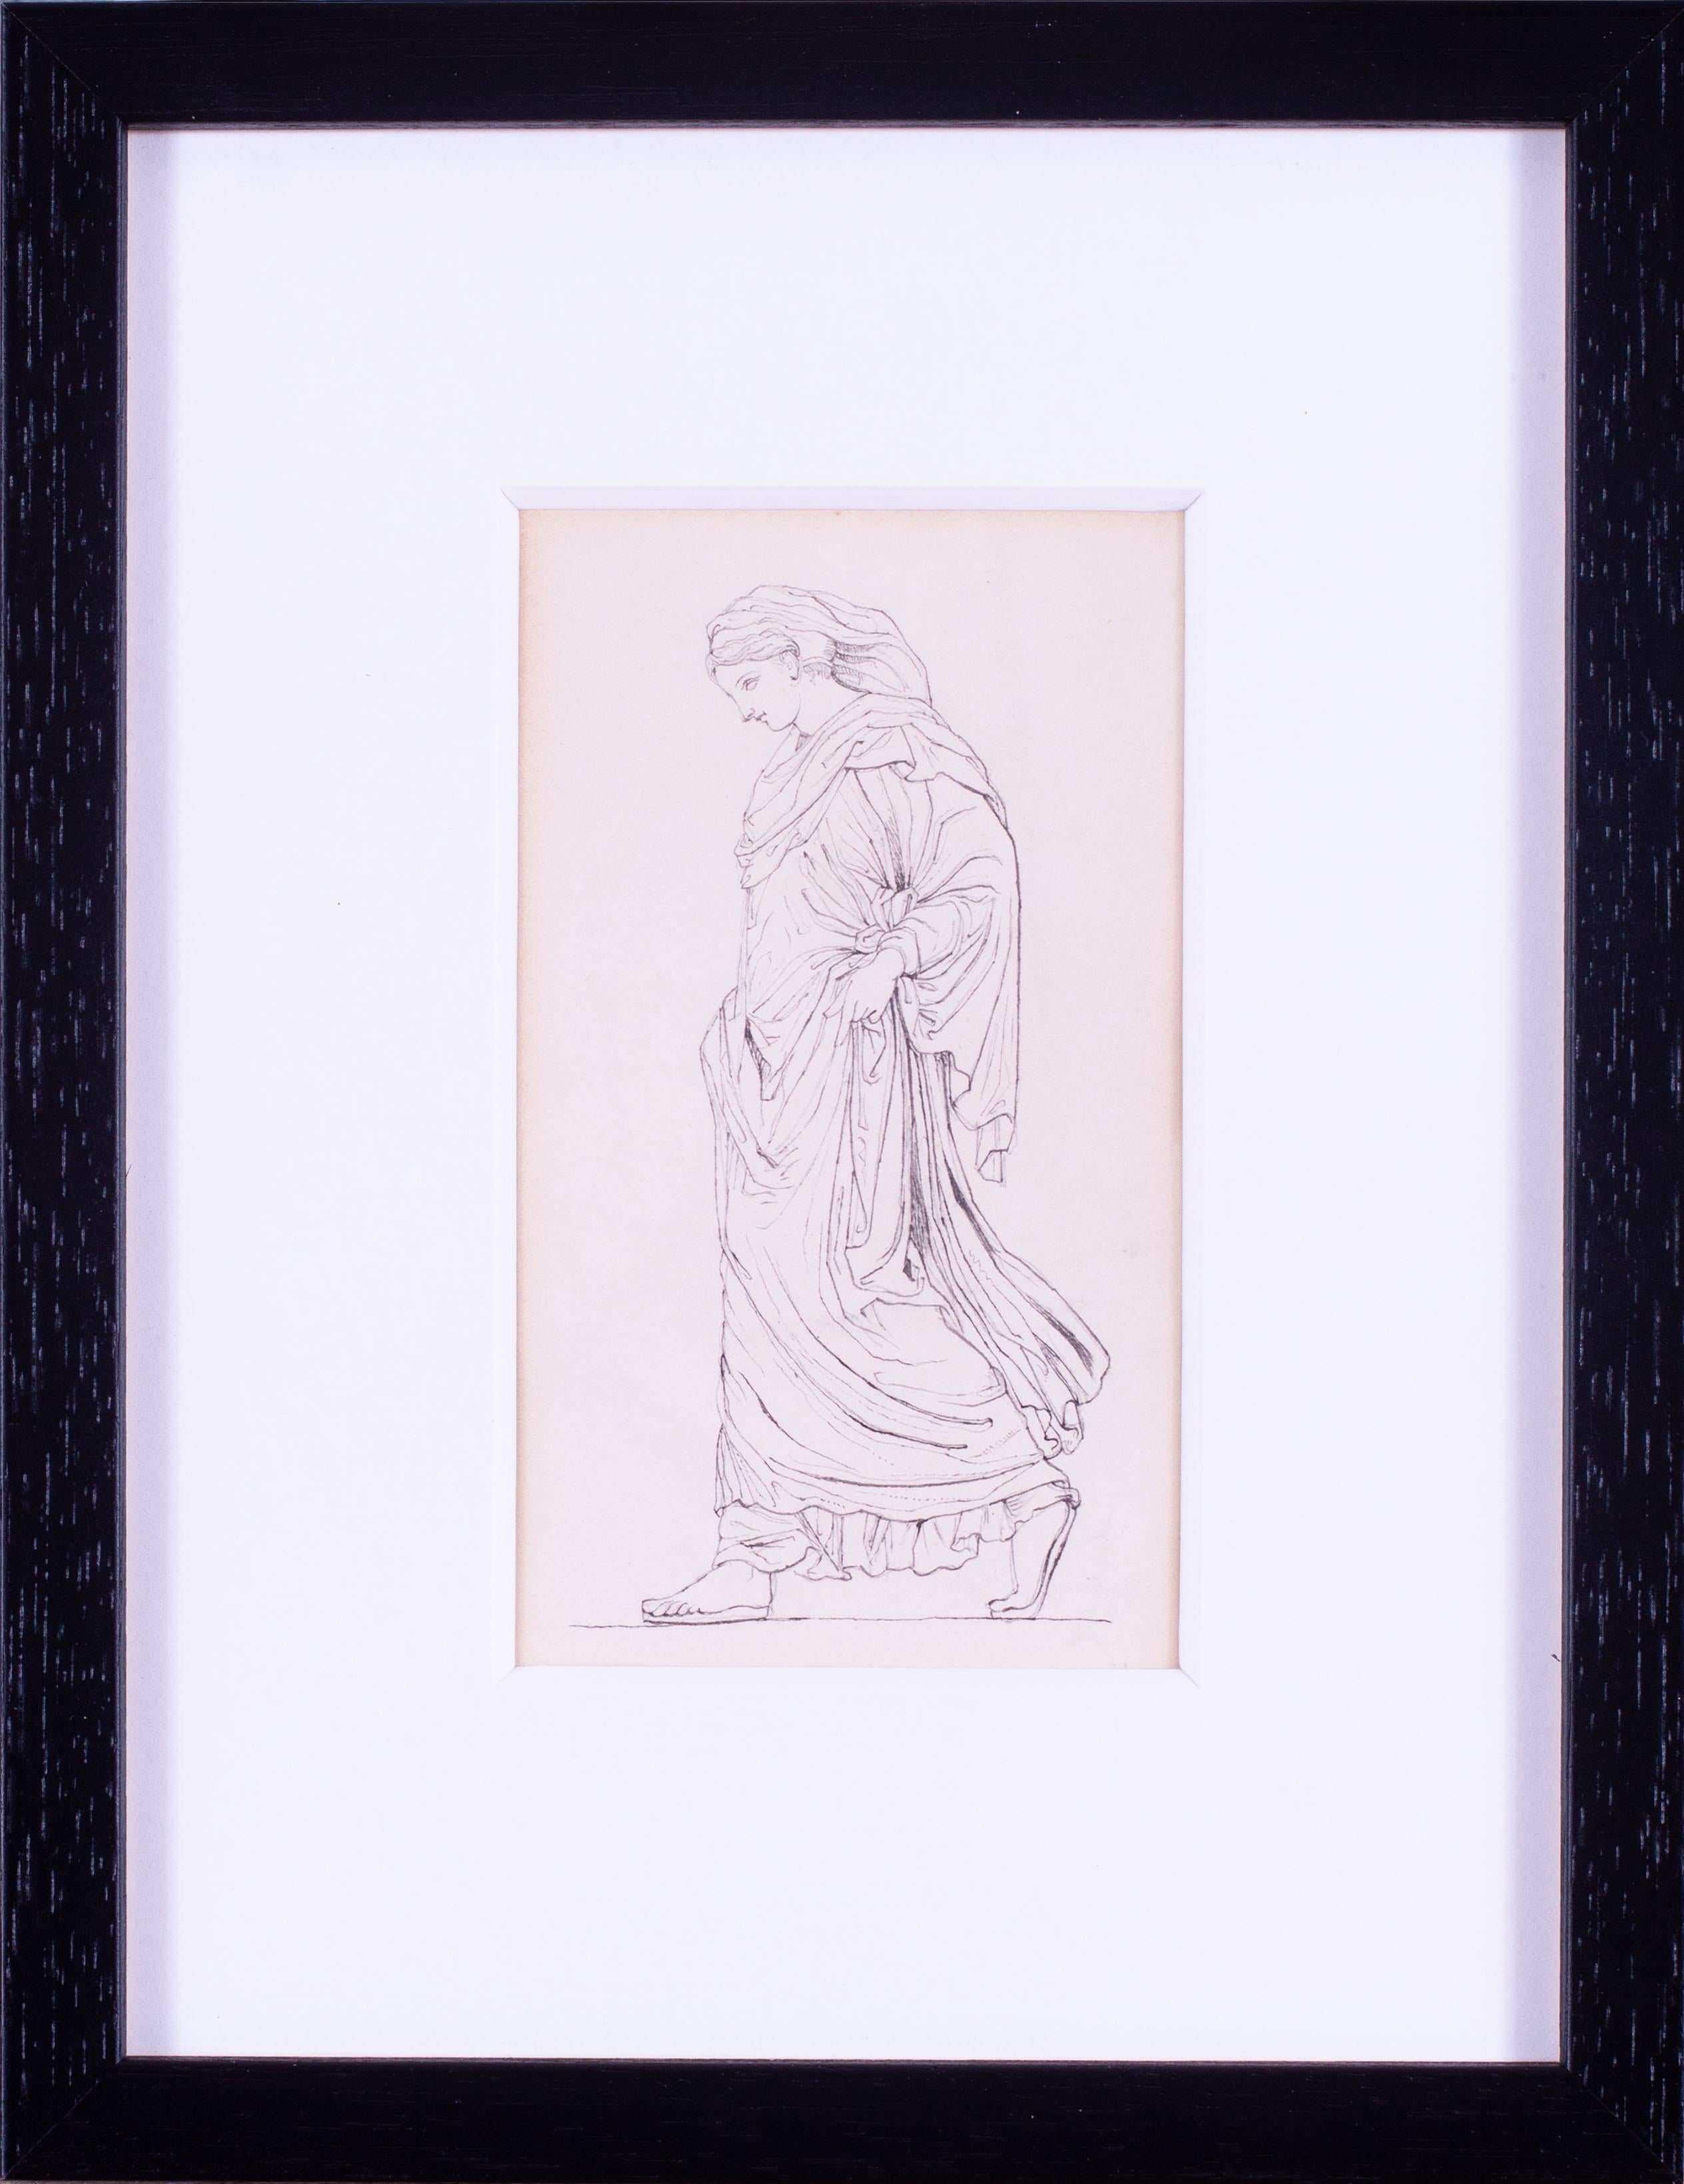 John Flaxman (Brite, 1755- 1826) zugeschrieben
Studie eines klassischen Mädchens
Feder und Tinte auf Papier
5.1/2 x 3.1/8 in. (14 x 8 cm.)